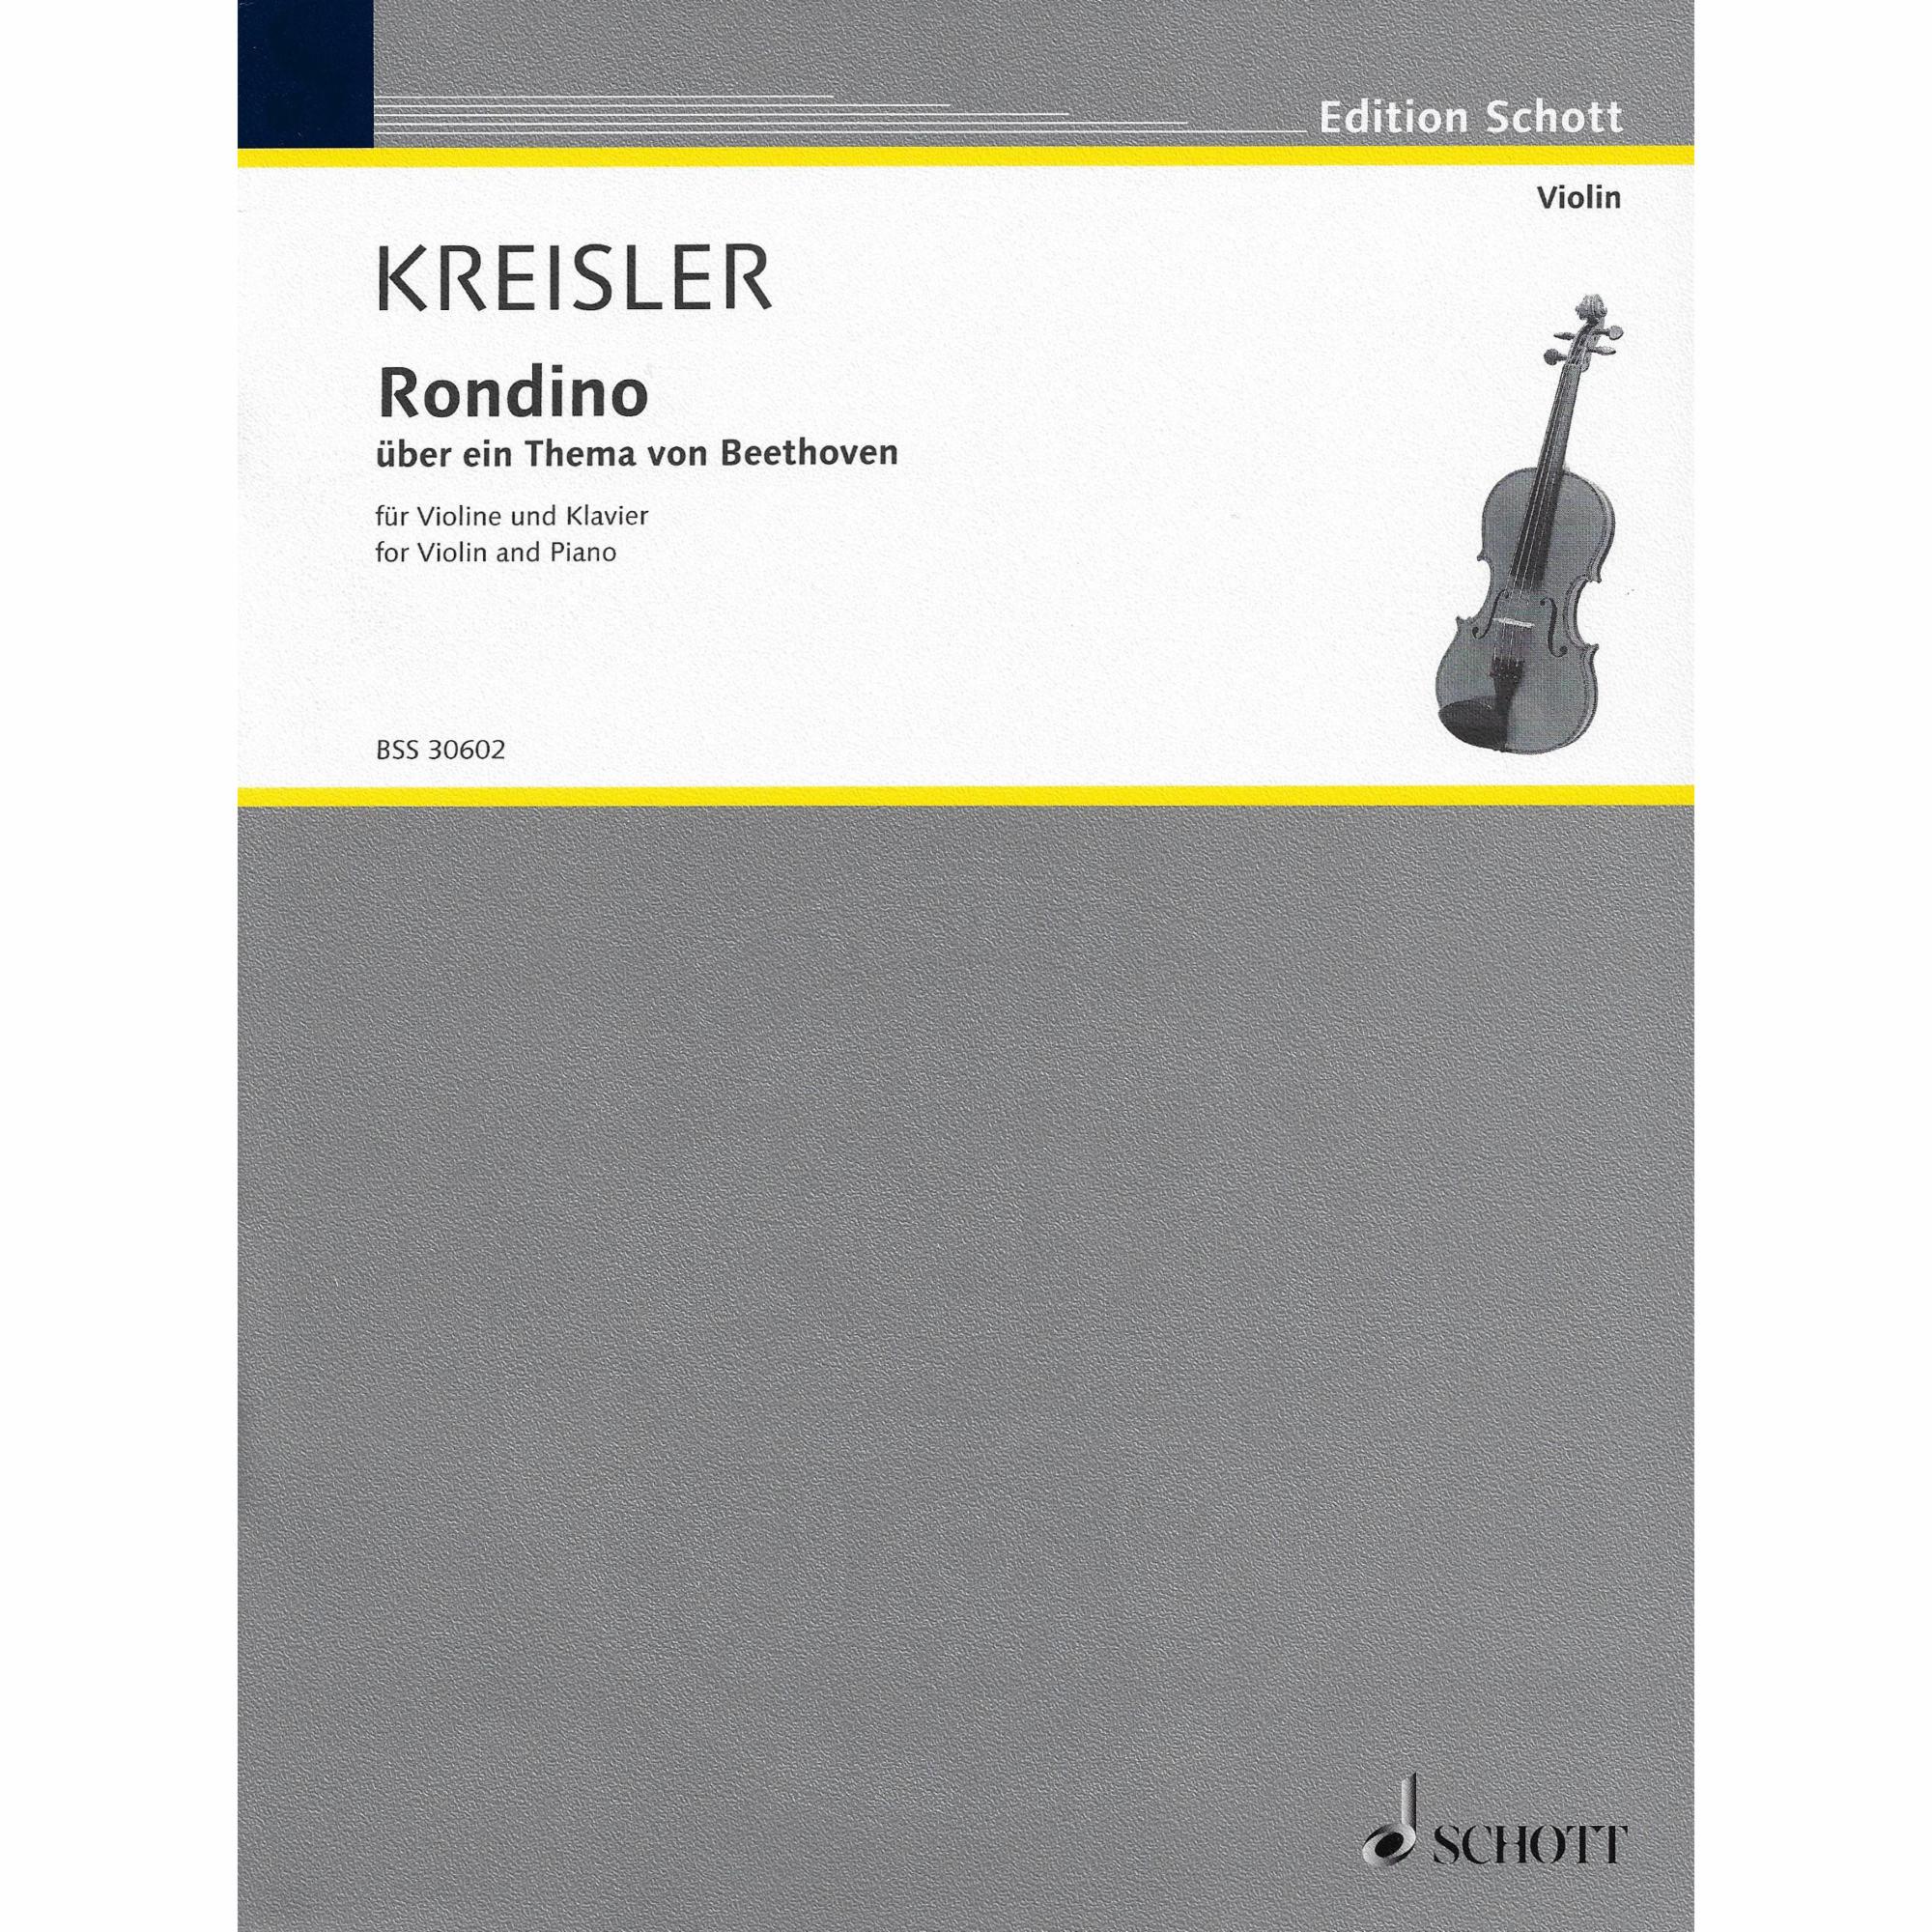 Kreisler -- Rondino for Violin and Piano